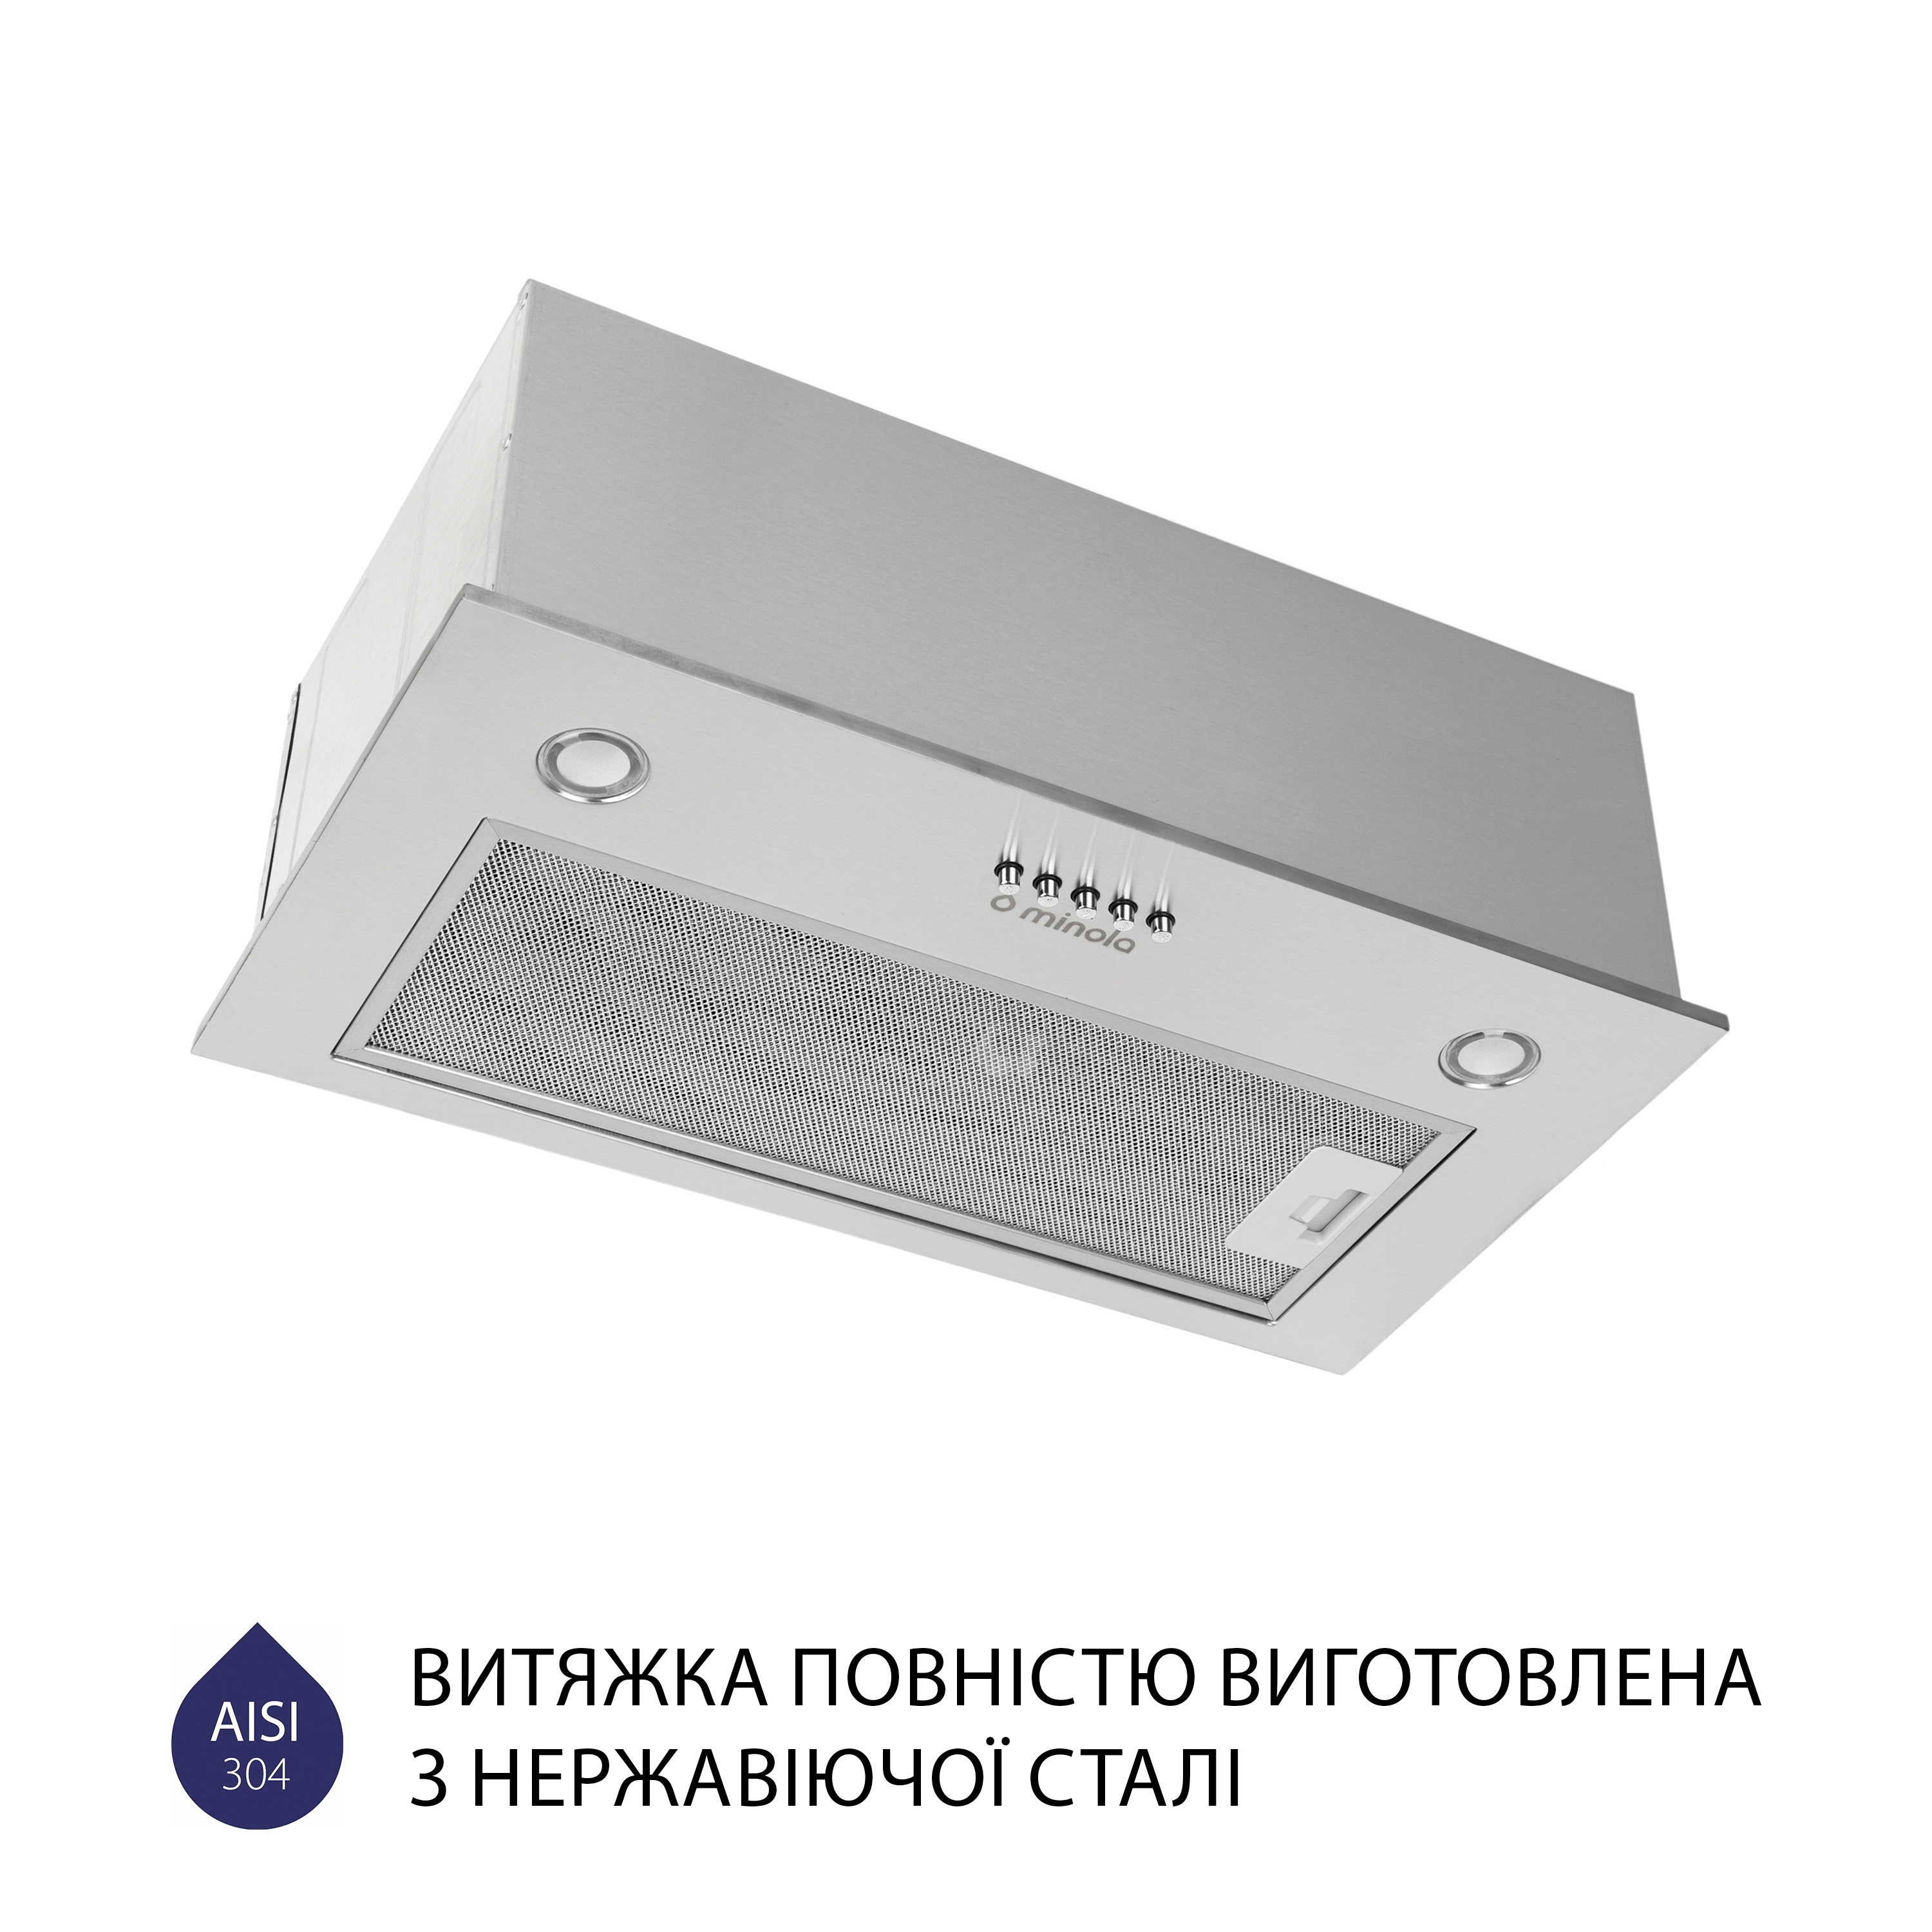 продаём Minola HBI 5327 I 800 LED в Украине - фото 4